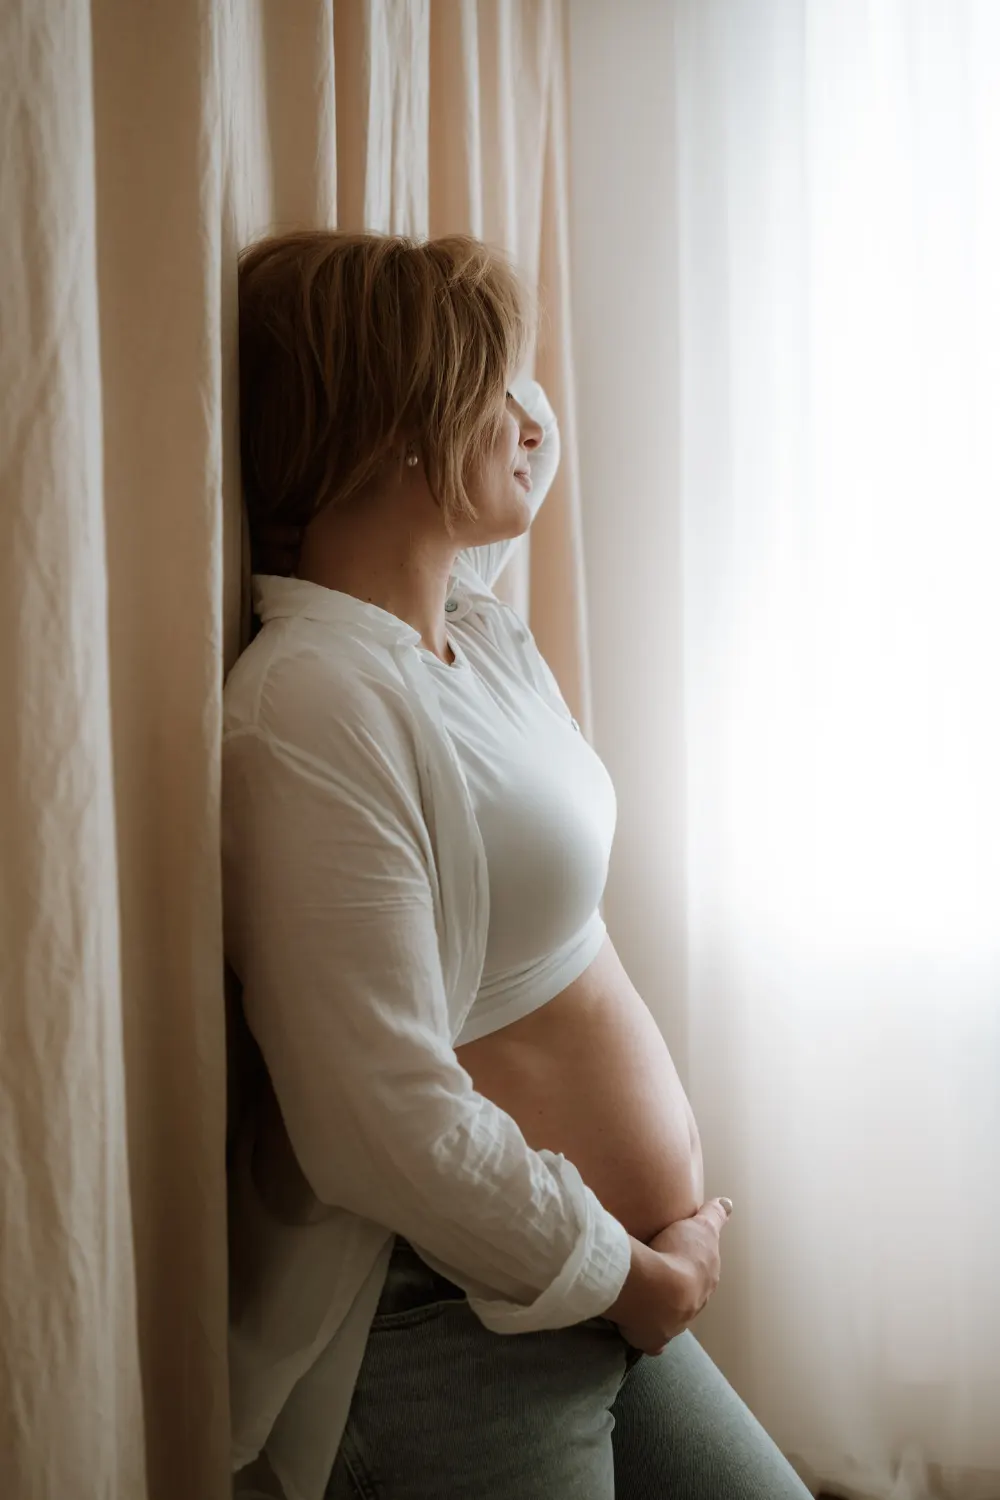 těhotná žena s holým bříškem se opírá o zeď